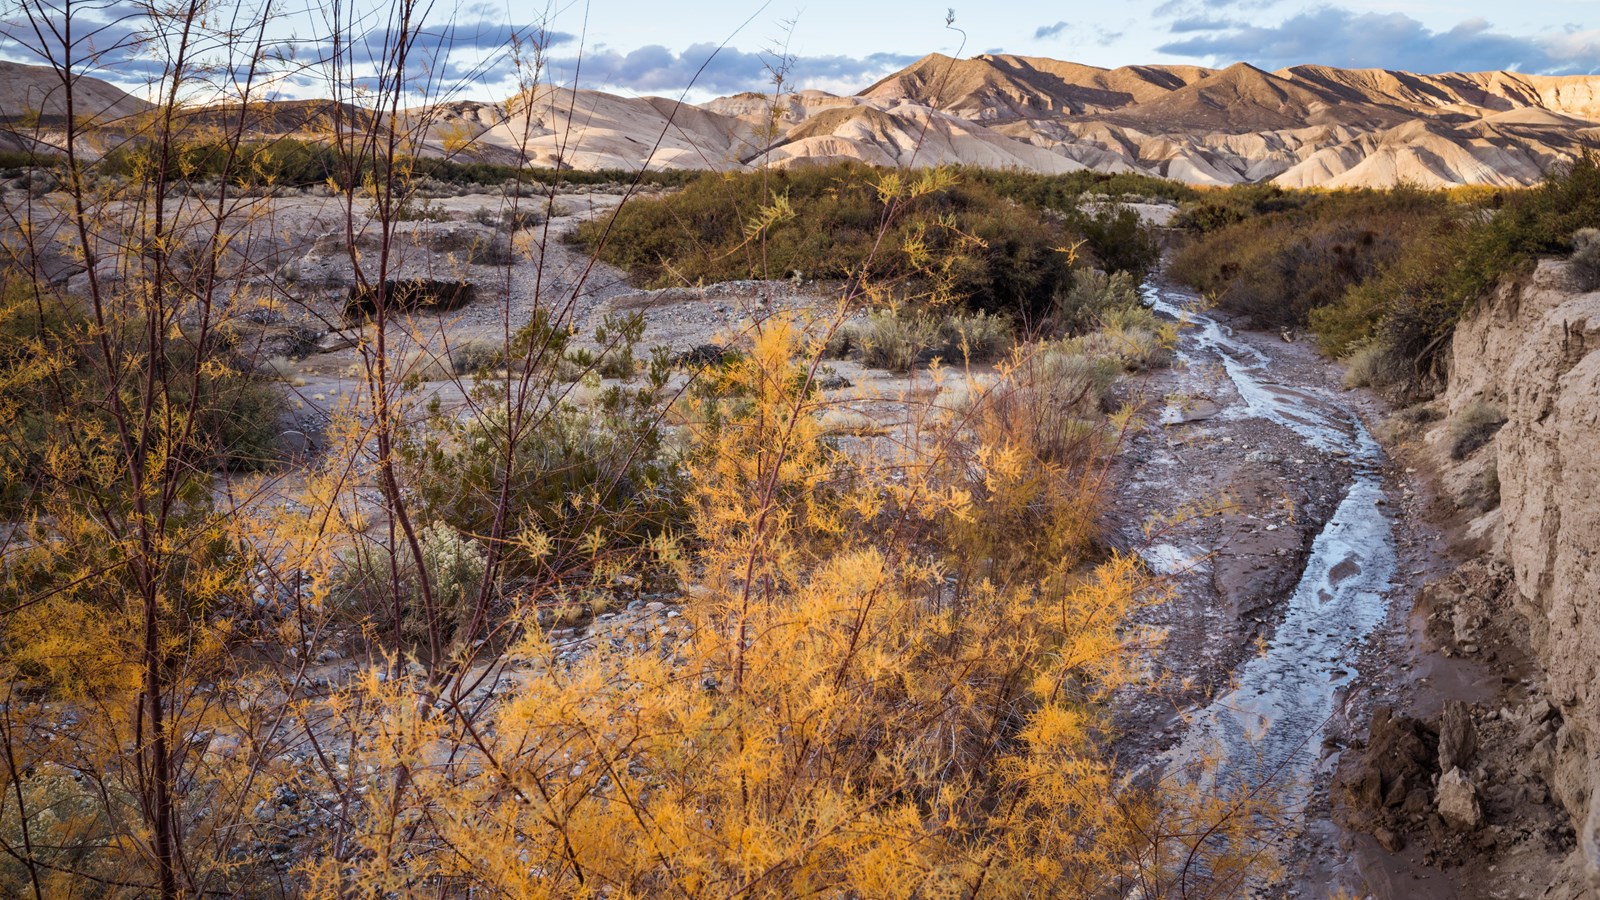 A rive runs through a highly eroded desert canyon.